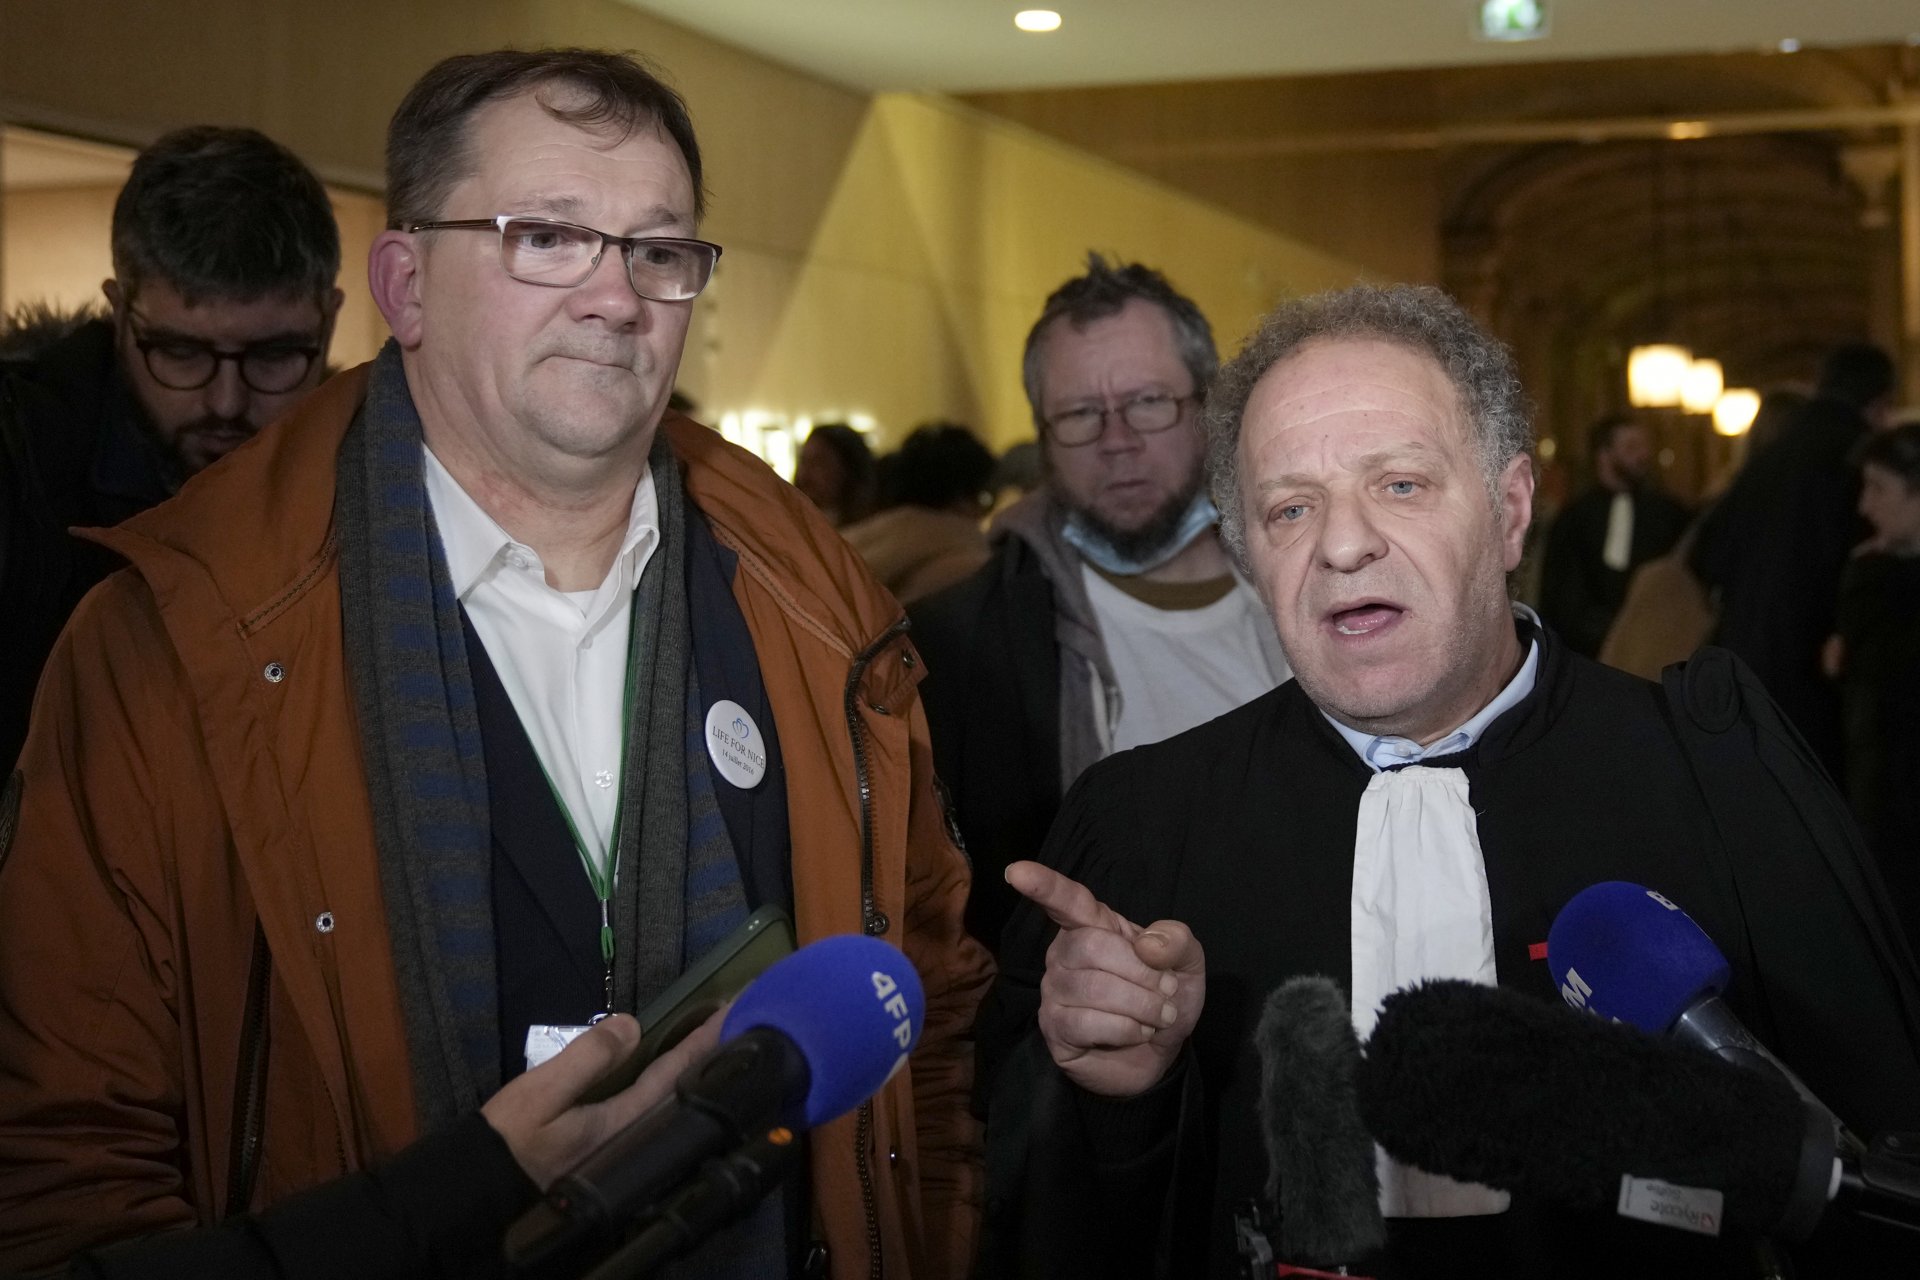 Жан Клод Хюблер, президент на асоциацията на жертвите, вляво, и адвокат Механа Мухоу, вдясно, след края на процеса 